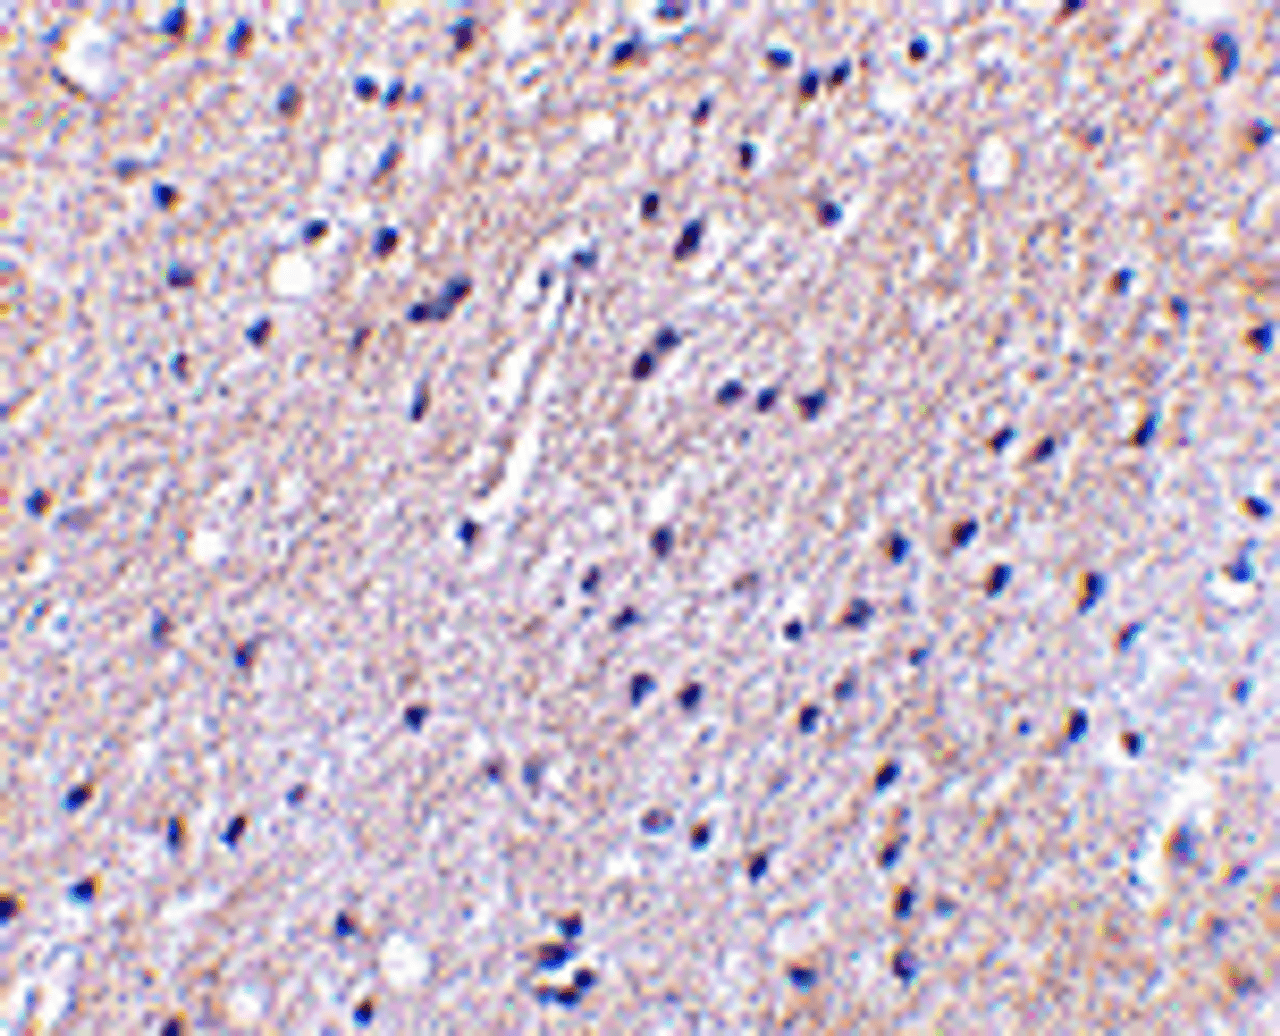 Immunohistochemical staining of human brain tissue using Nhe-1 antibody at 2.5 ug/mL.